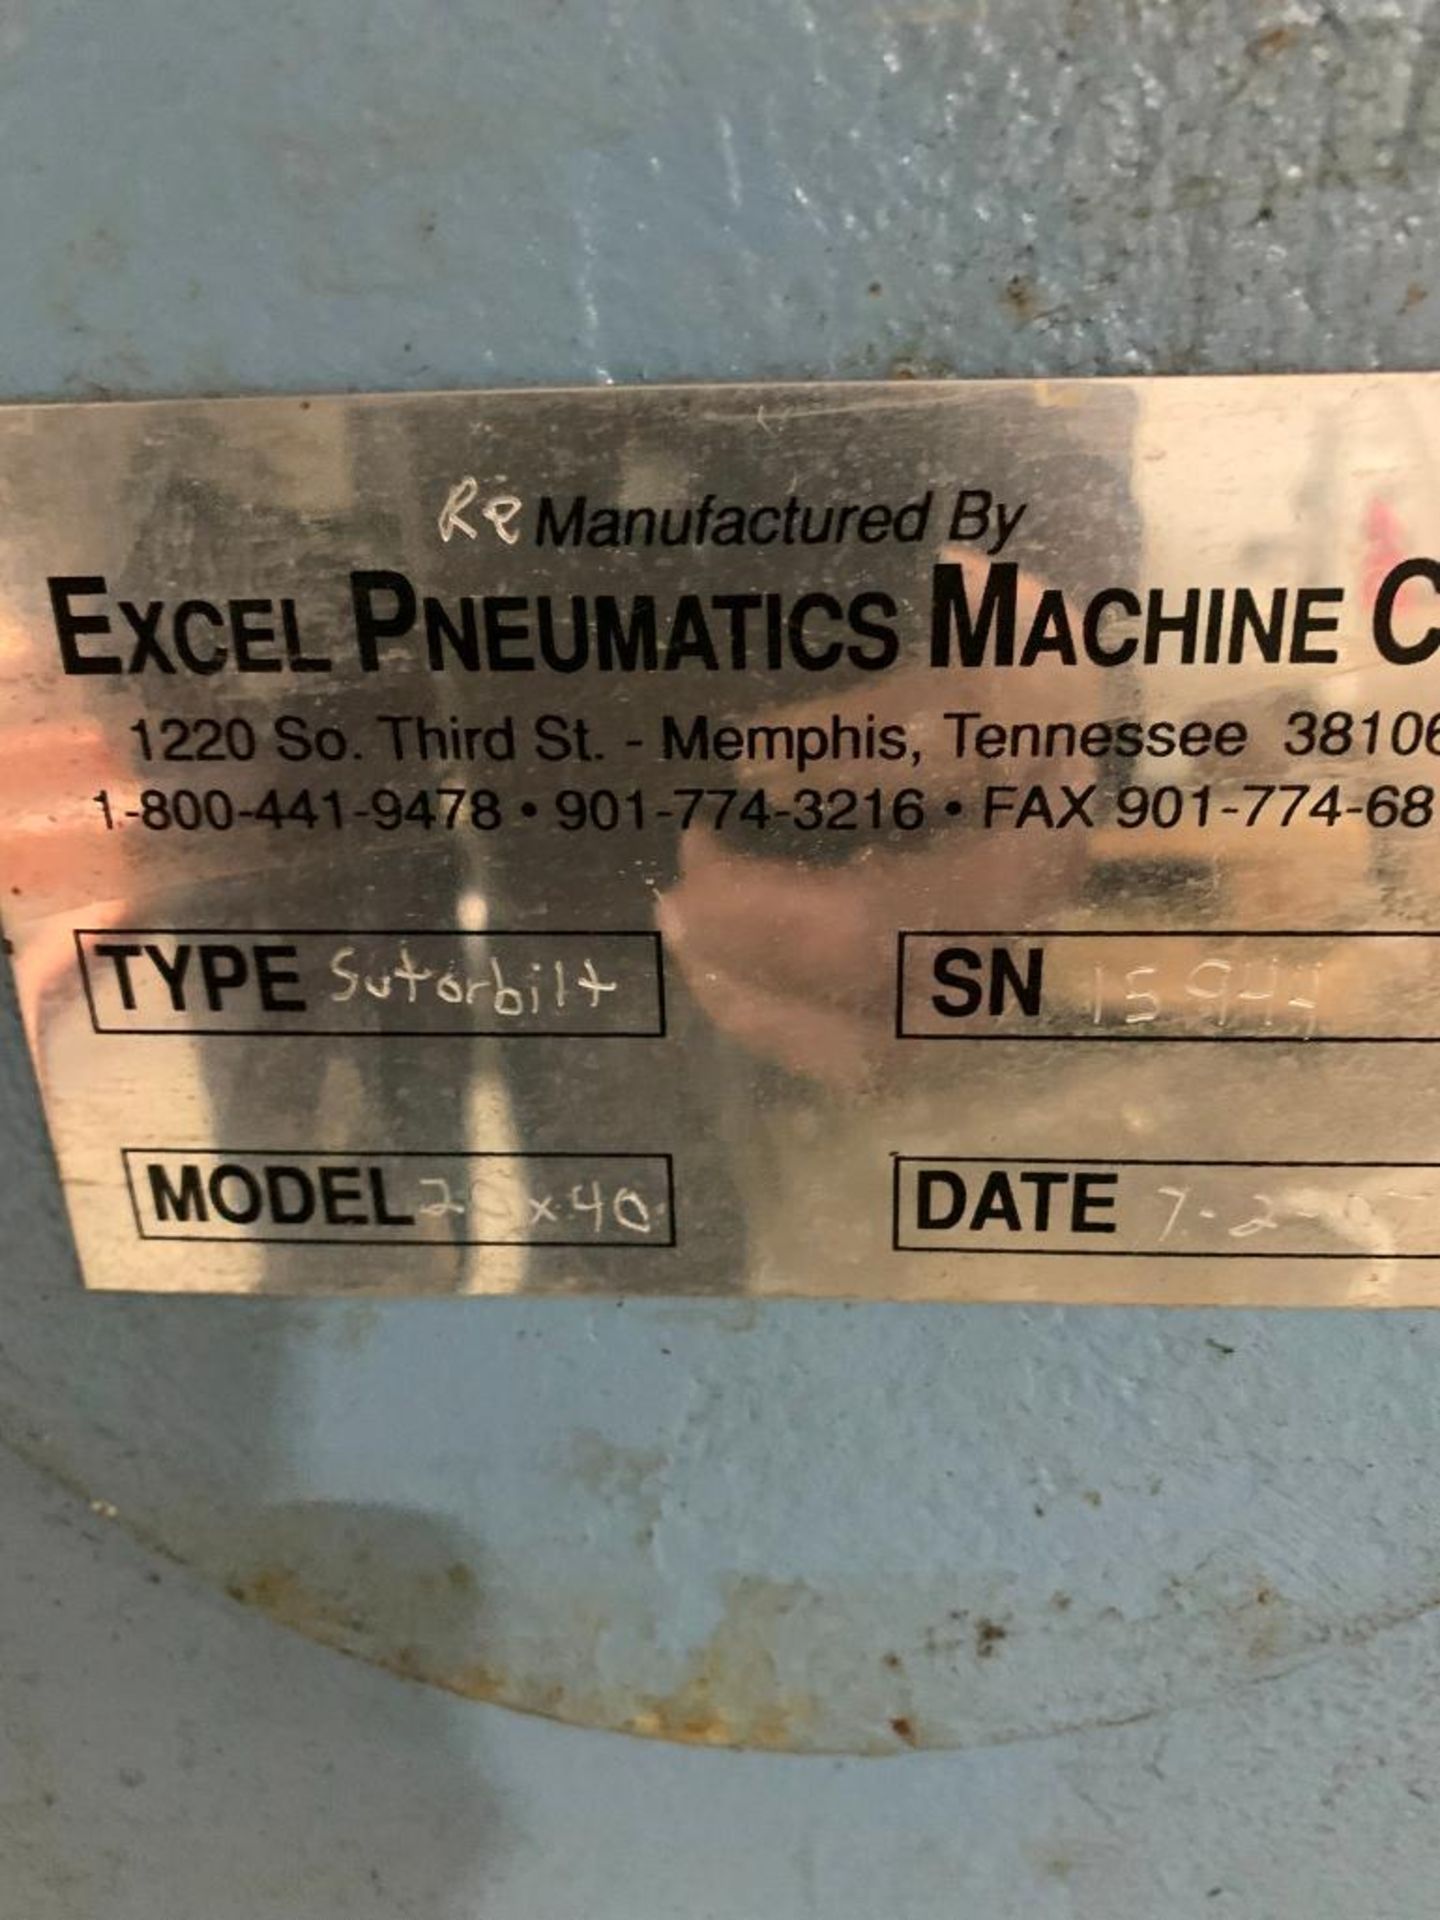 Excel Pneumatics Mach Co. Blower, Type Sutorbilt, Model 20 X 40 - Image 3 of 3